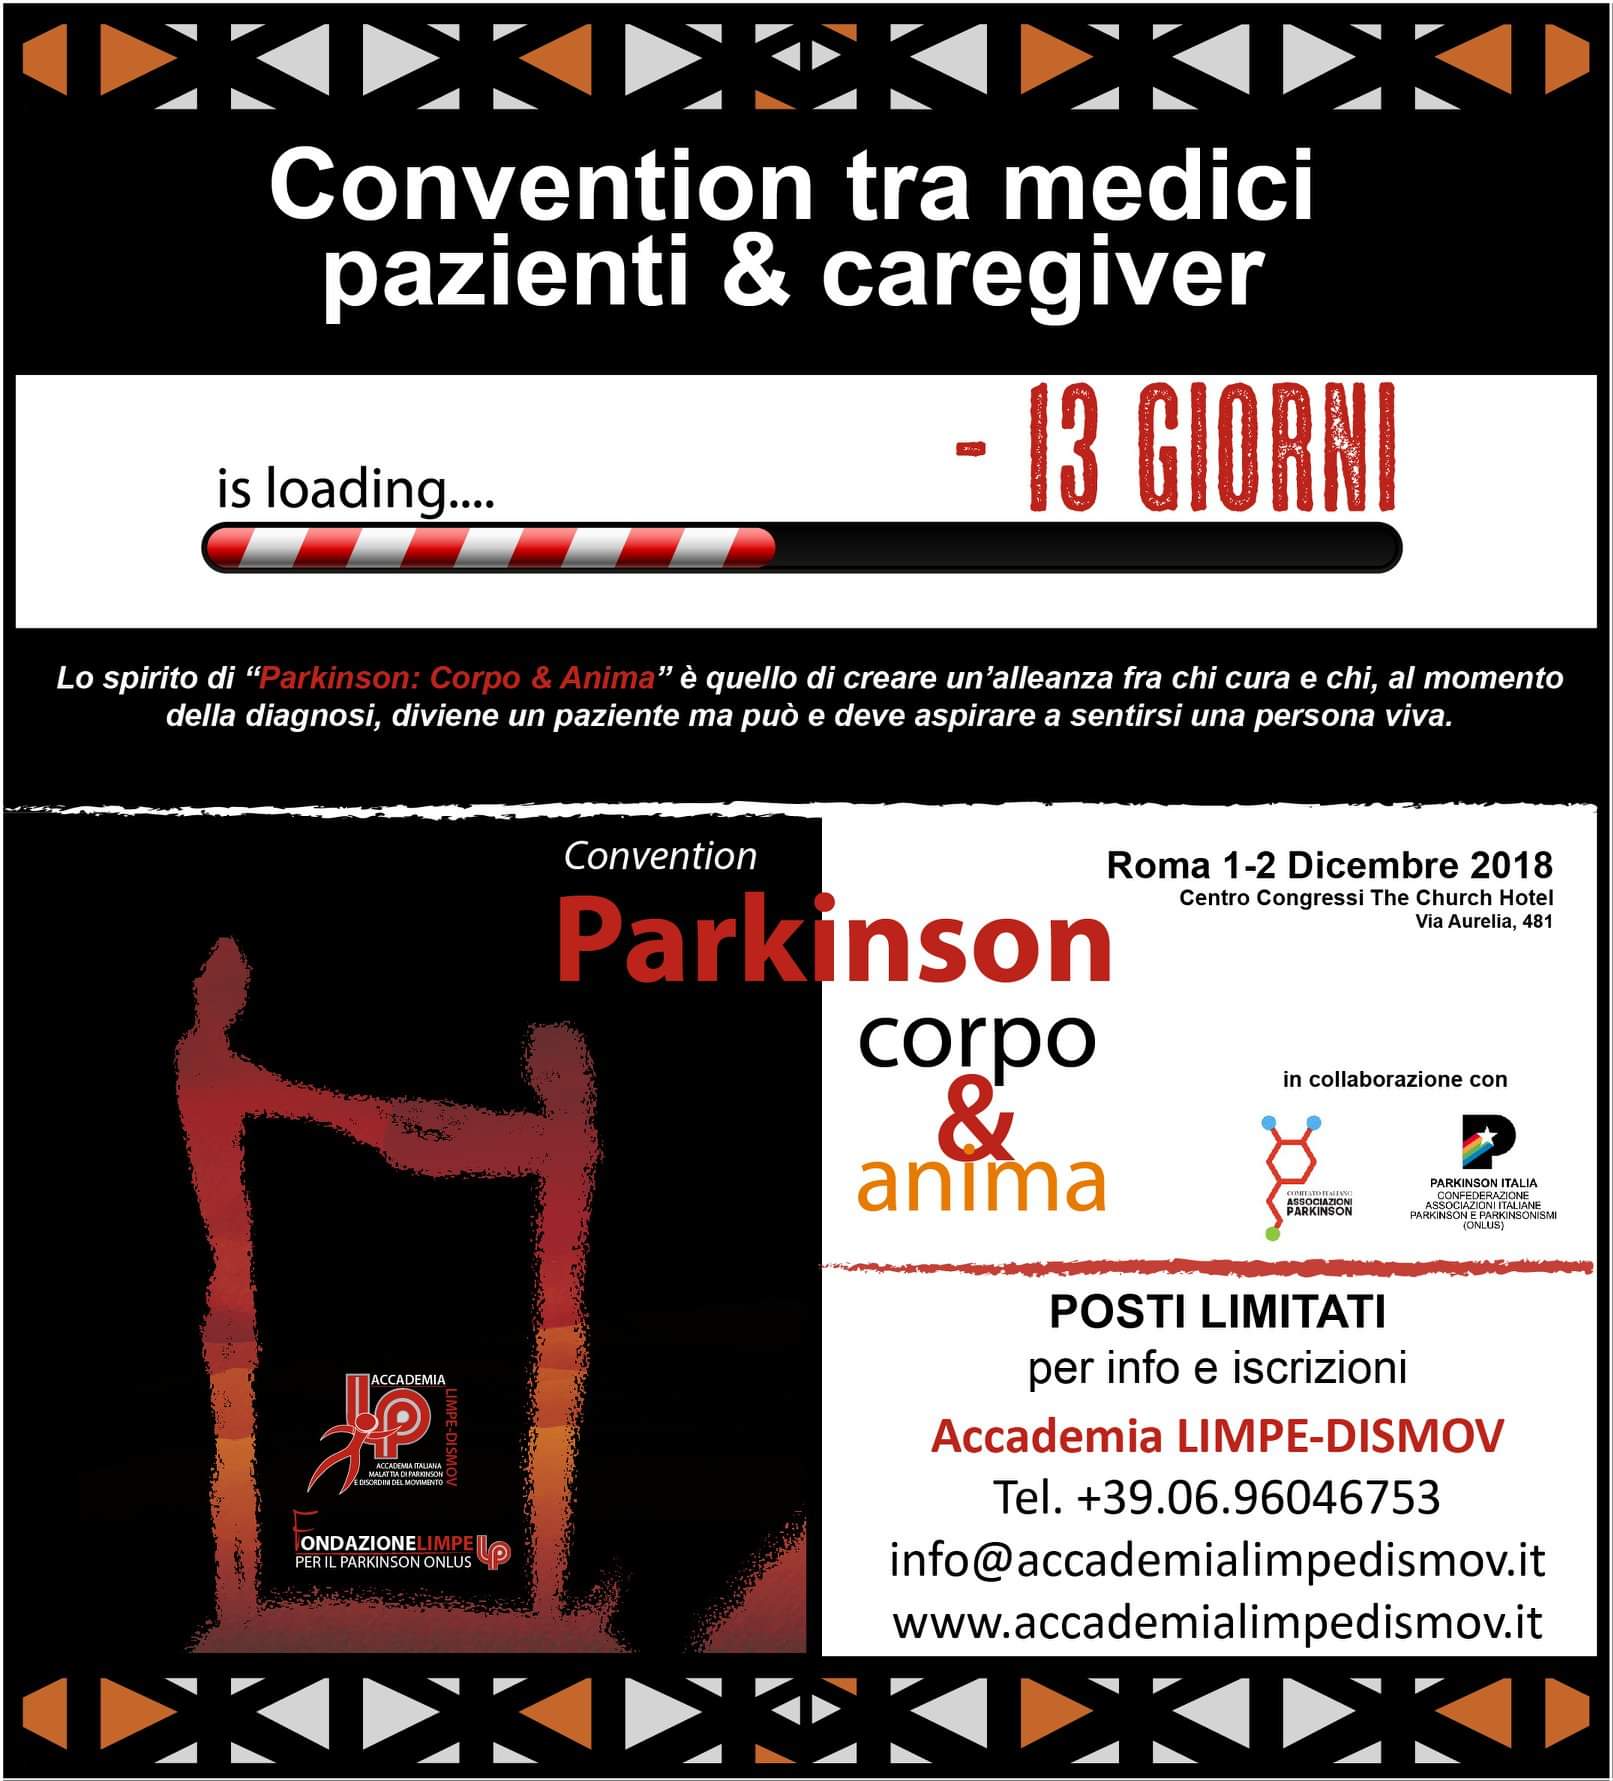 Convention "Parkinson Corpo e Anima